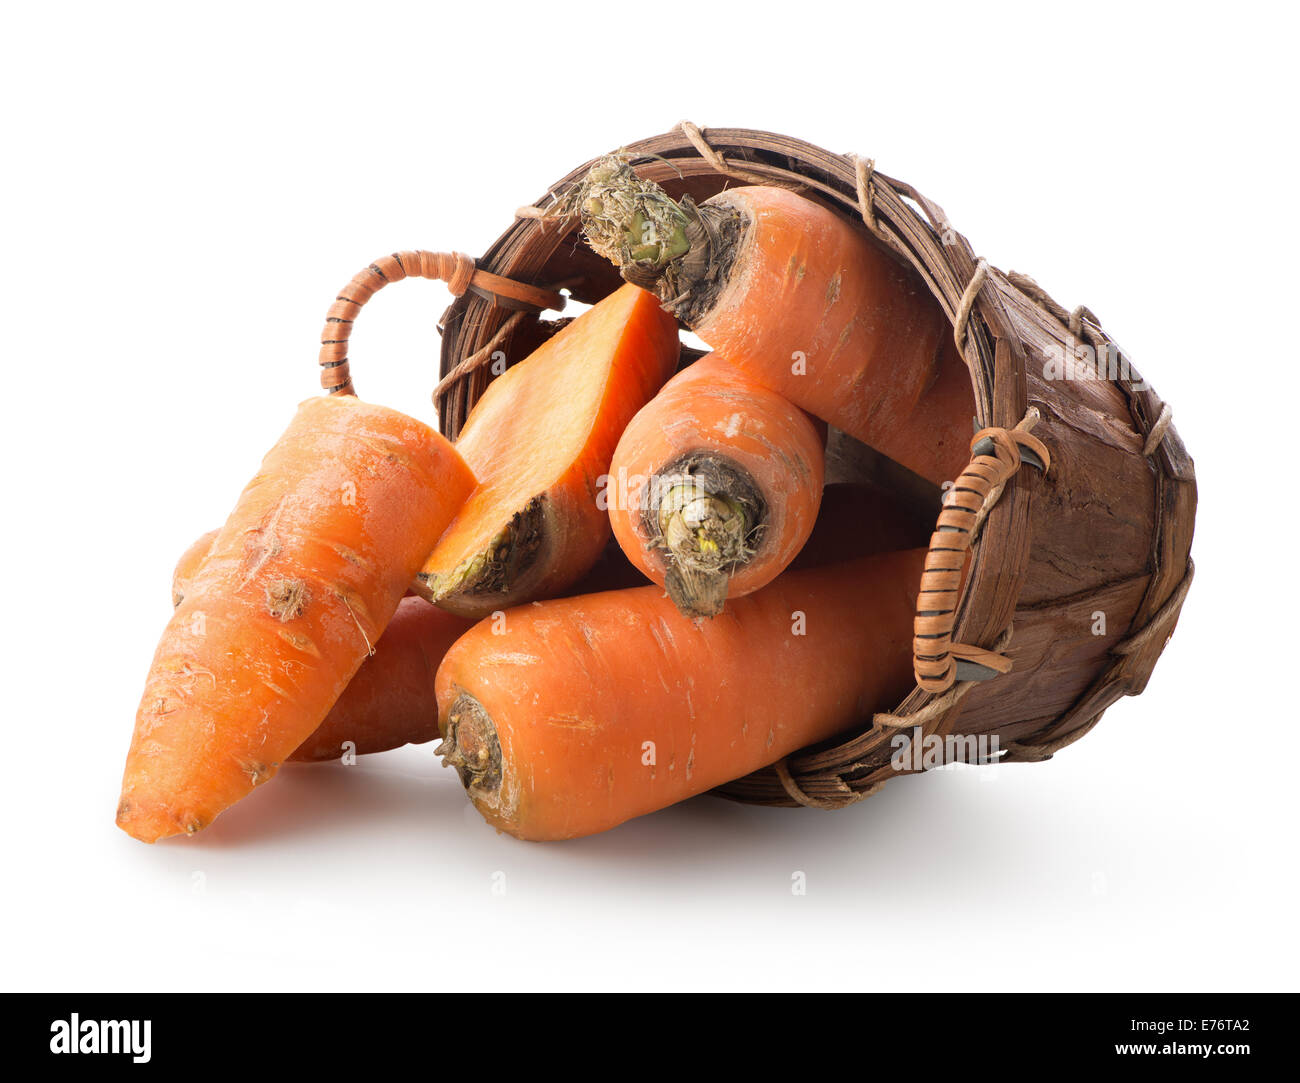 Les carottes dans un panier isolé sur fond blanc Banque D'Images